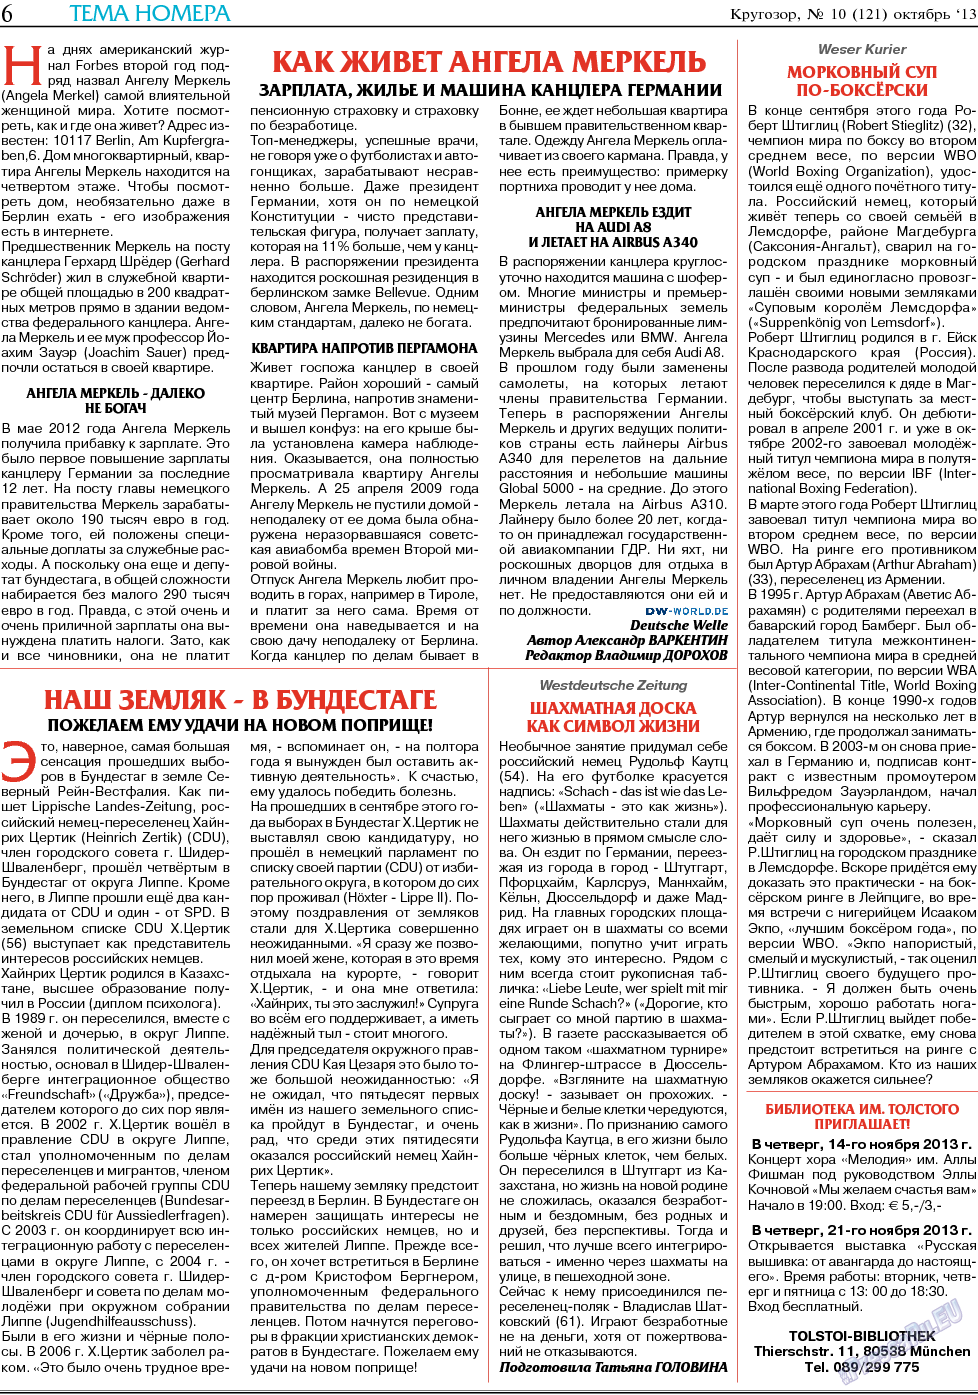 Кругозор, газета. 2013 №11 стр.6